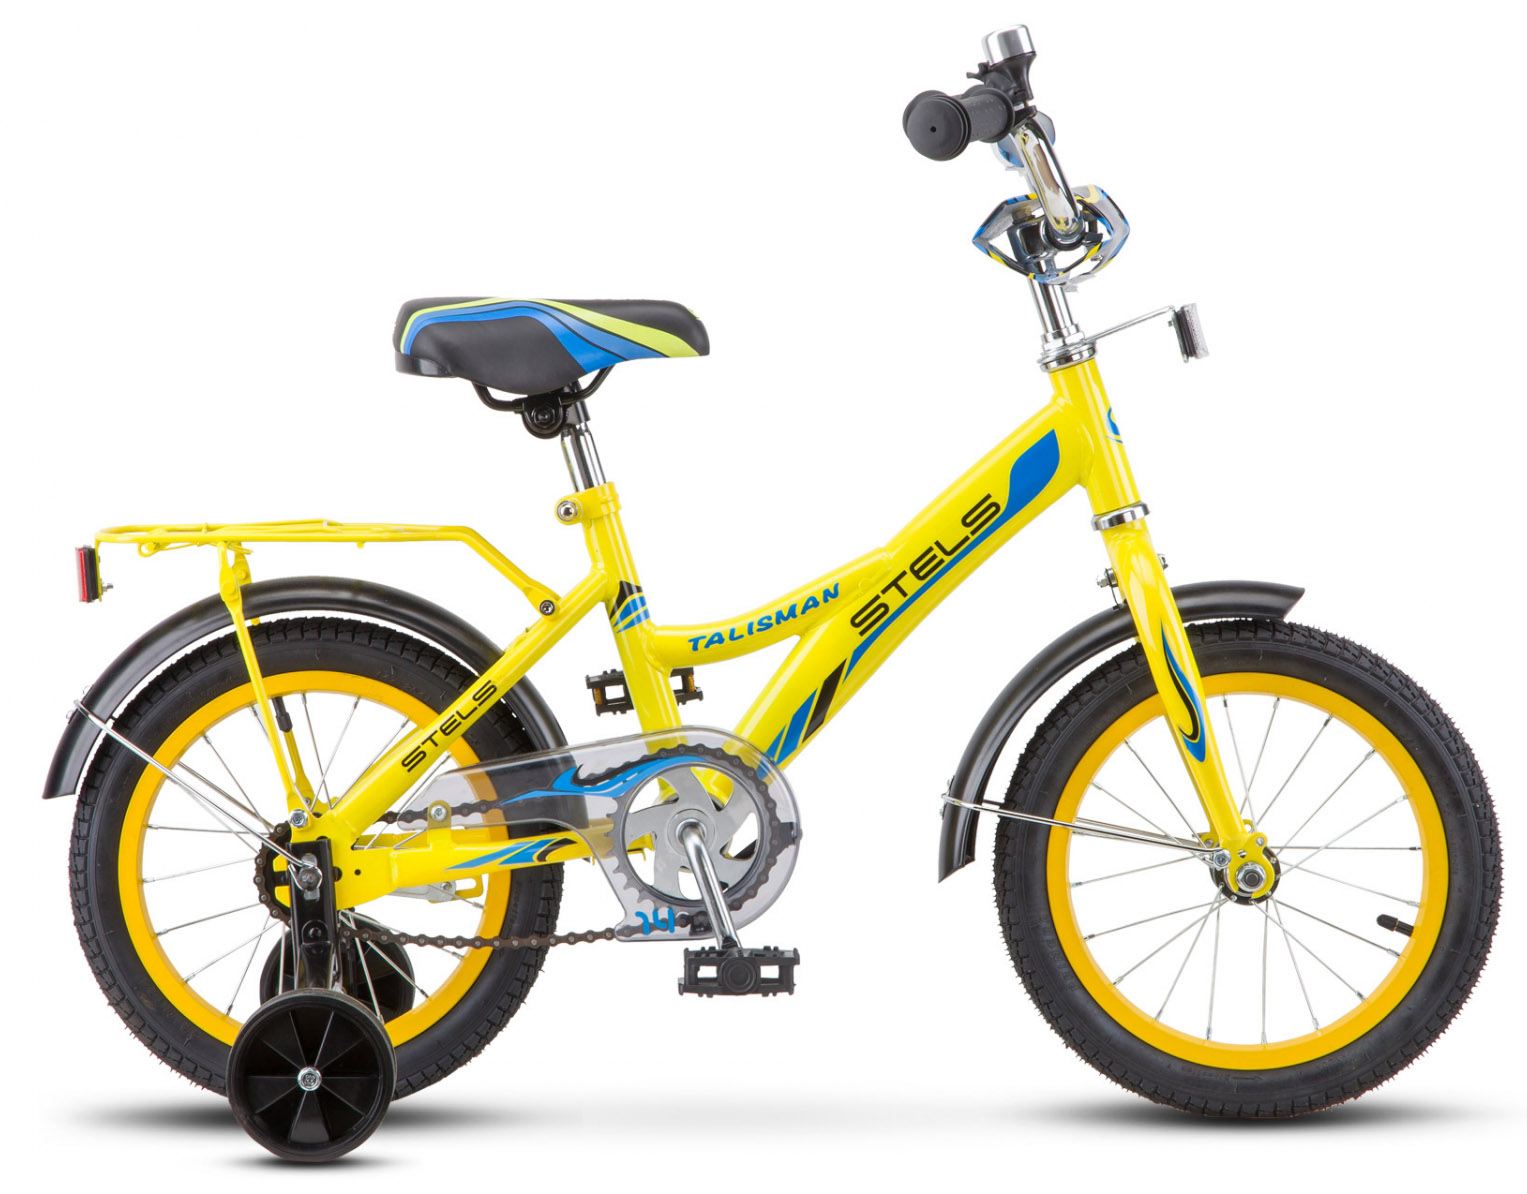  Велосипед трехколесный детский велосипед Stels Talisman 14 (Z010) 2018